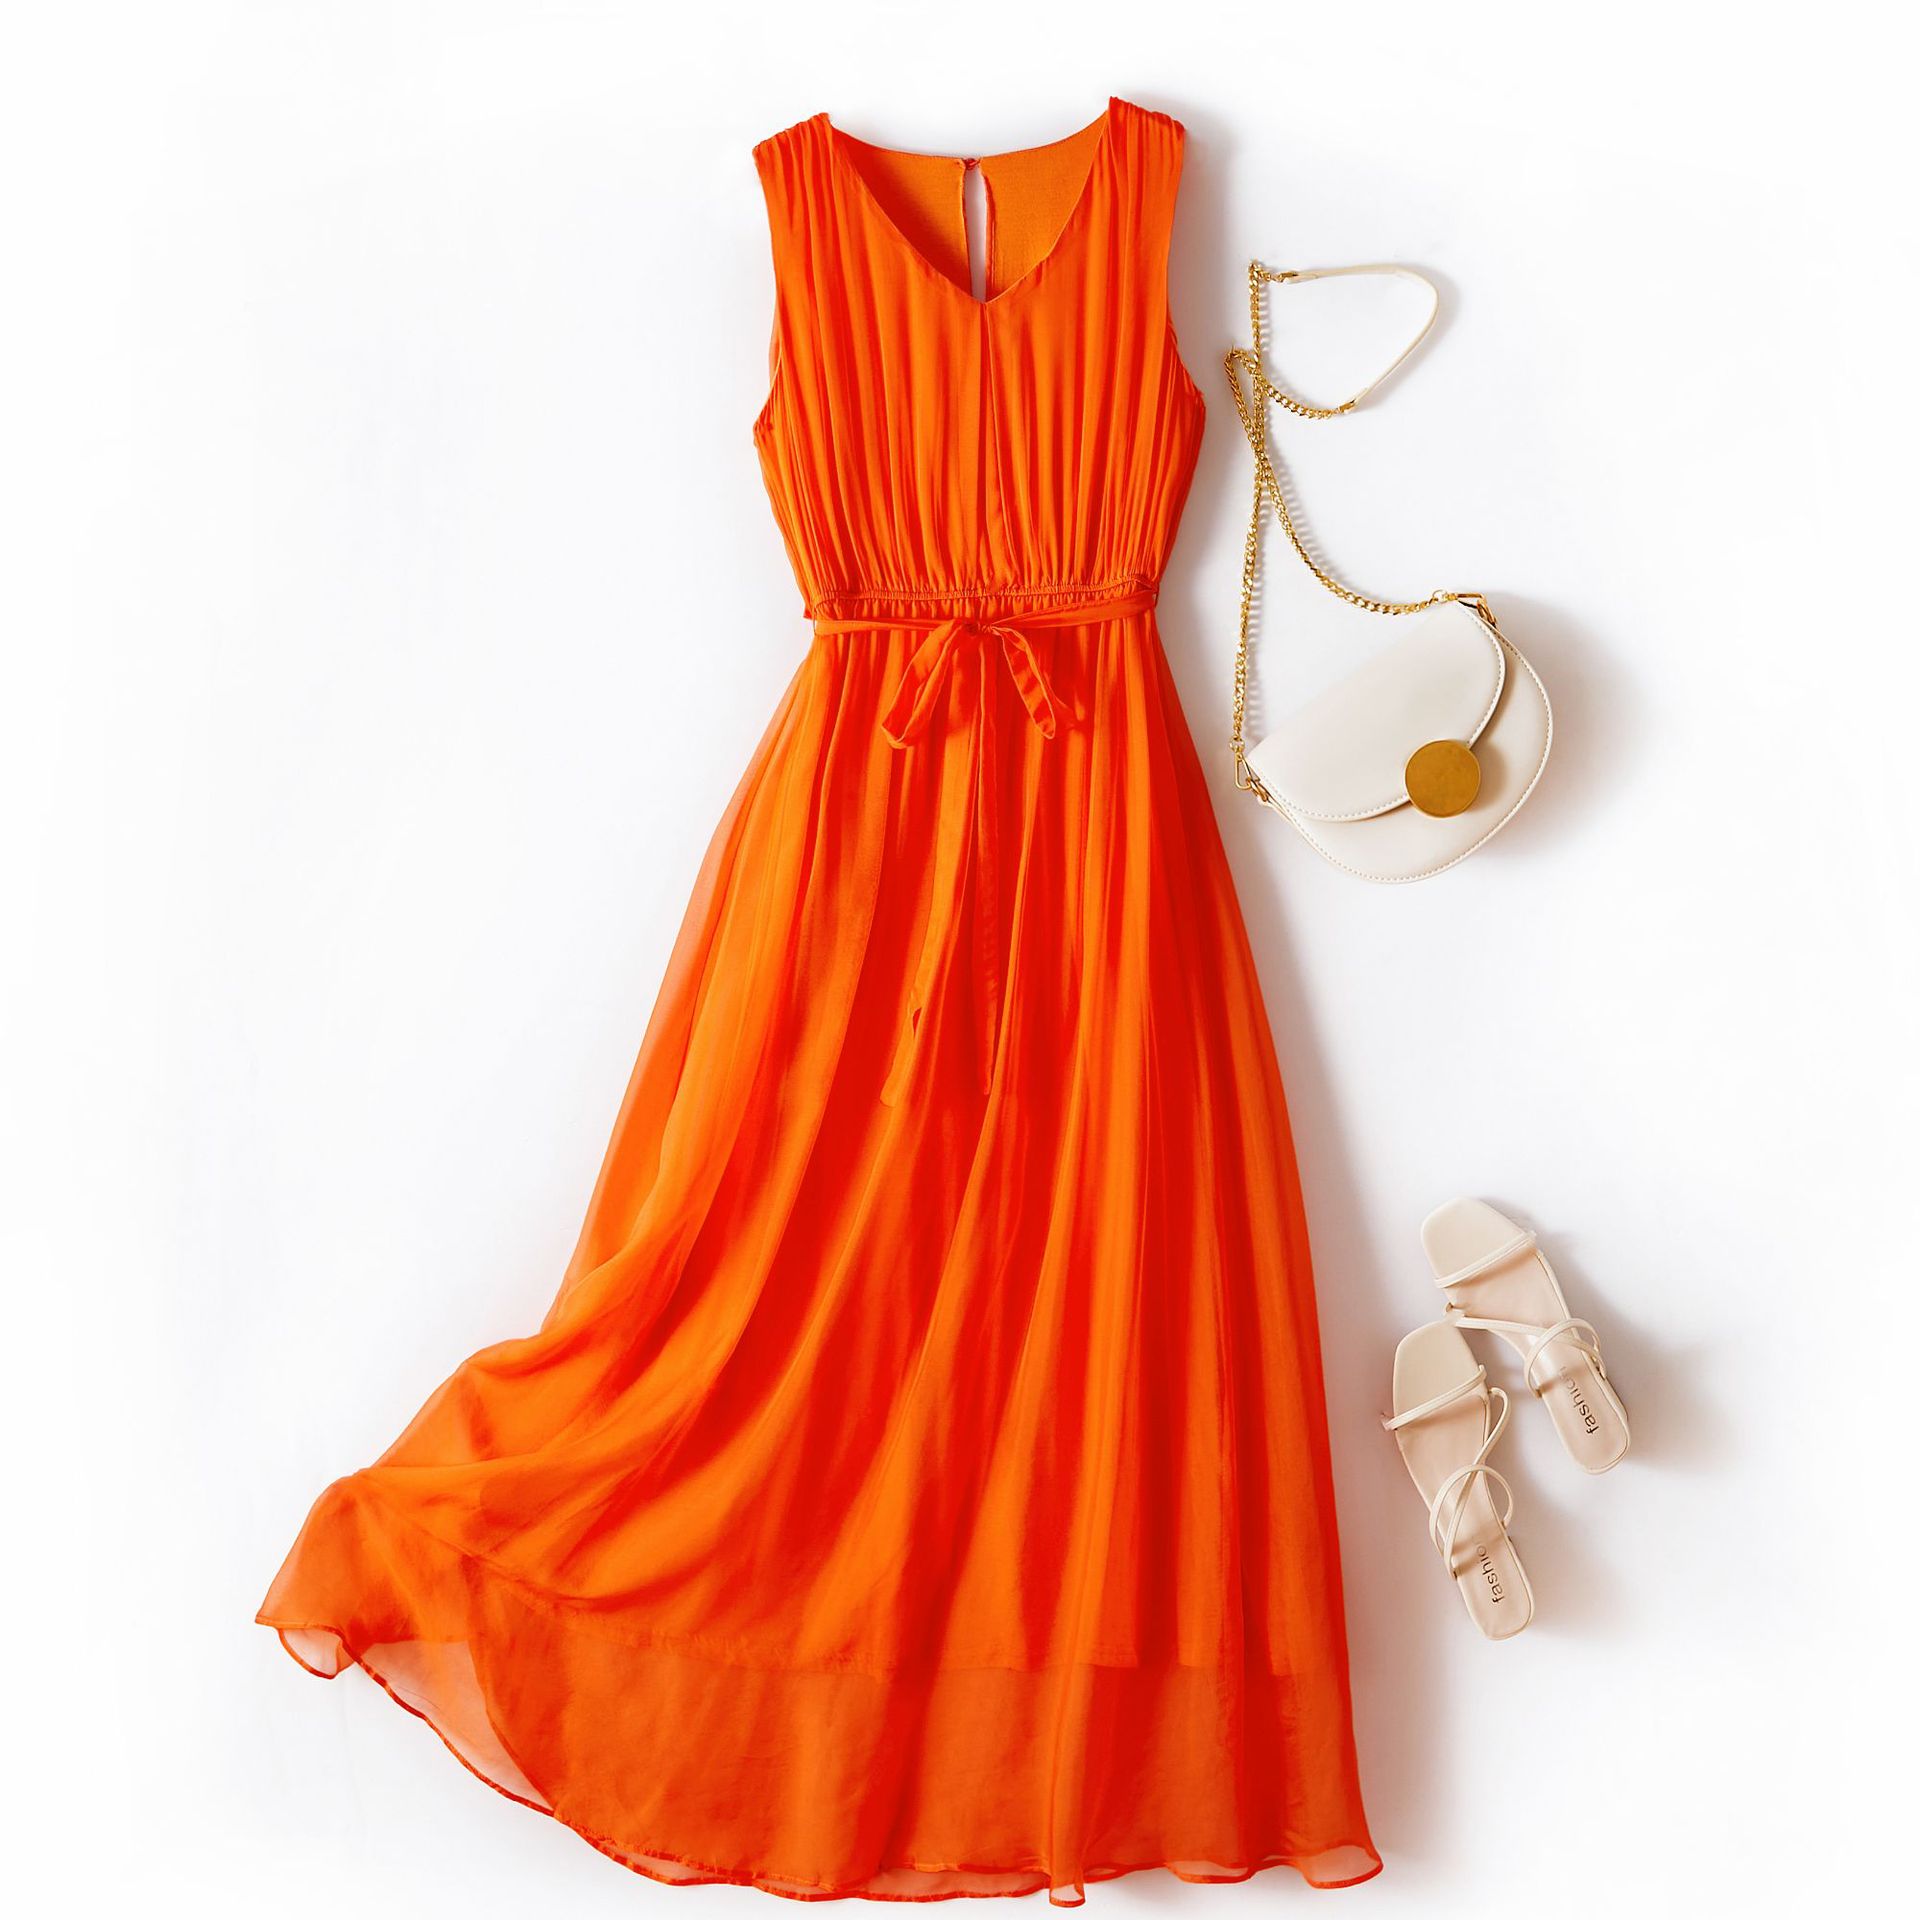 (Mới) Mã H8208 Giá 2160K: Váy Đầm Liền Thân Dáng Dài Nữ Shtdge Hàng Mùa Hè Thời Trang Nữ Đồ Đi Biển Váy Maxi Chất Liệu G05 Sản Phẩm Mới, (Miễn Phí Vận Chuyển Toàn Quốc).